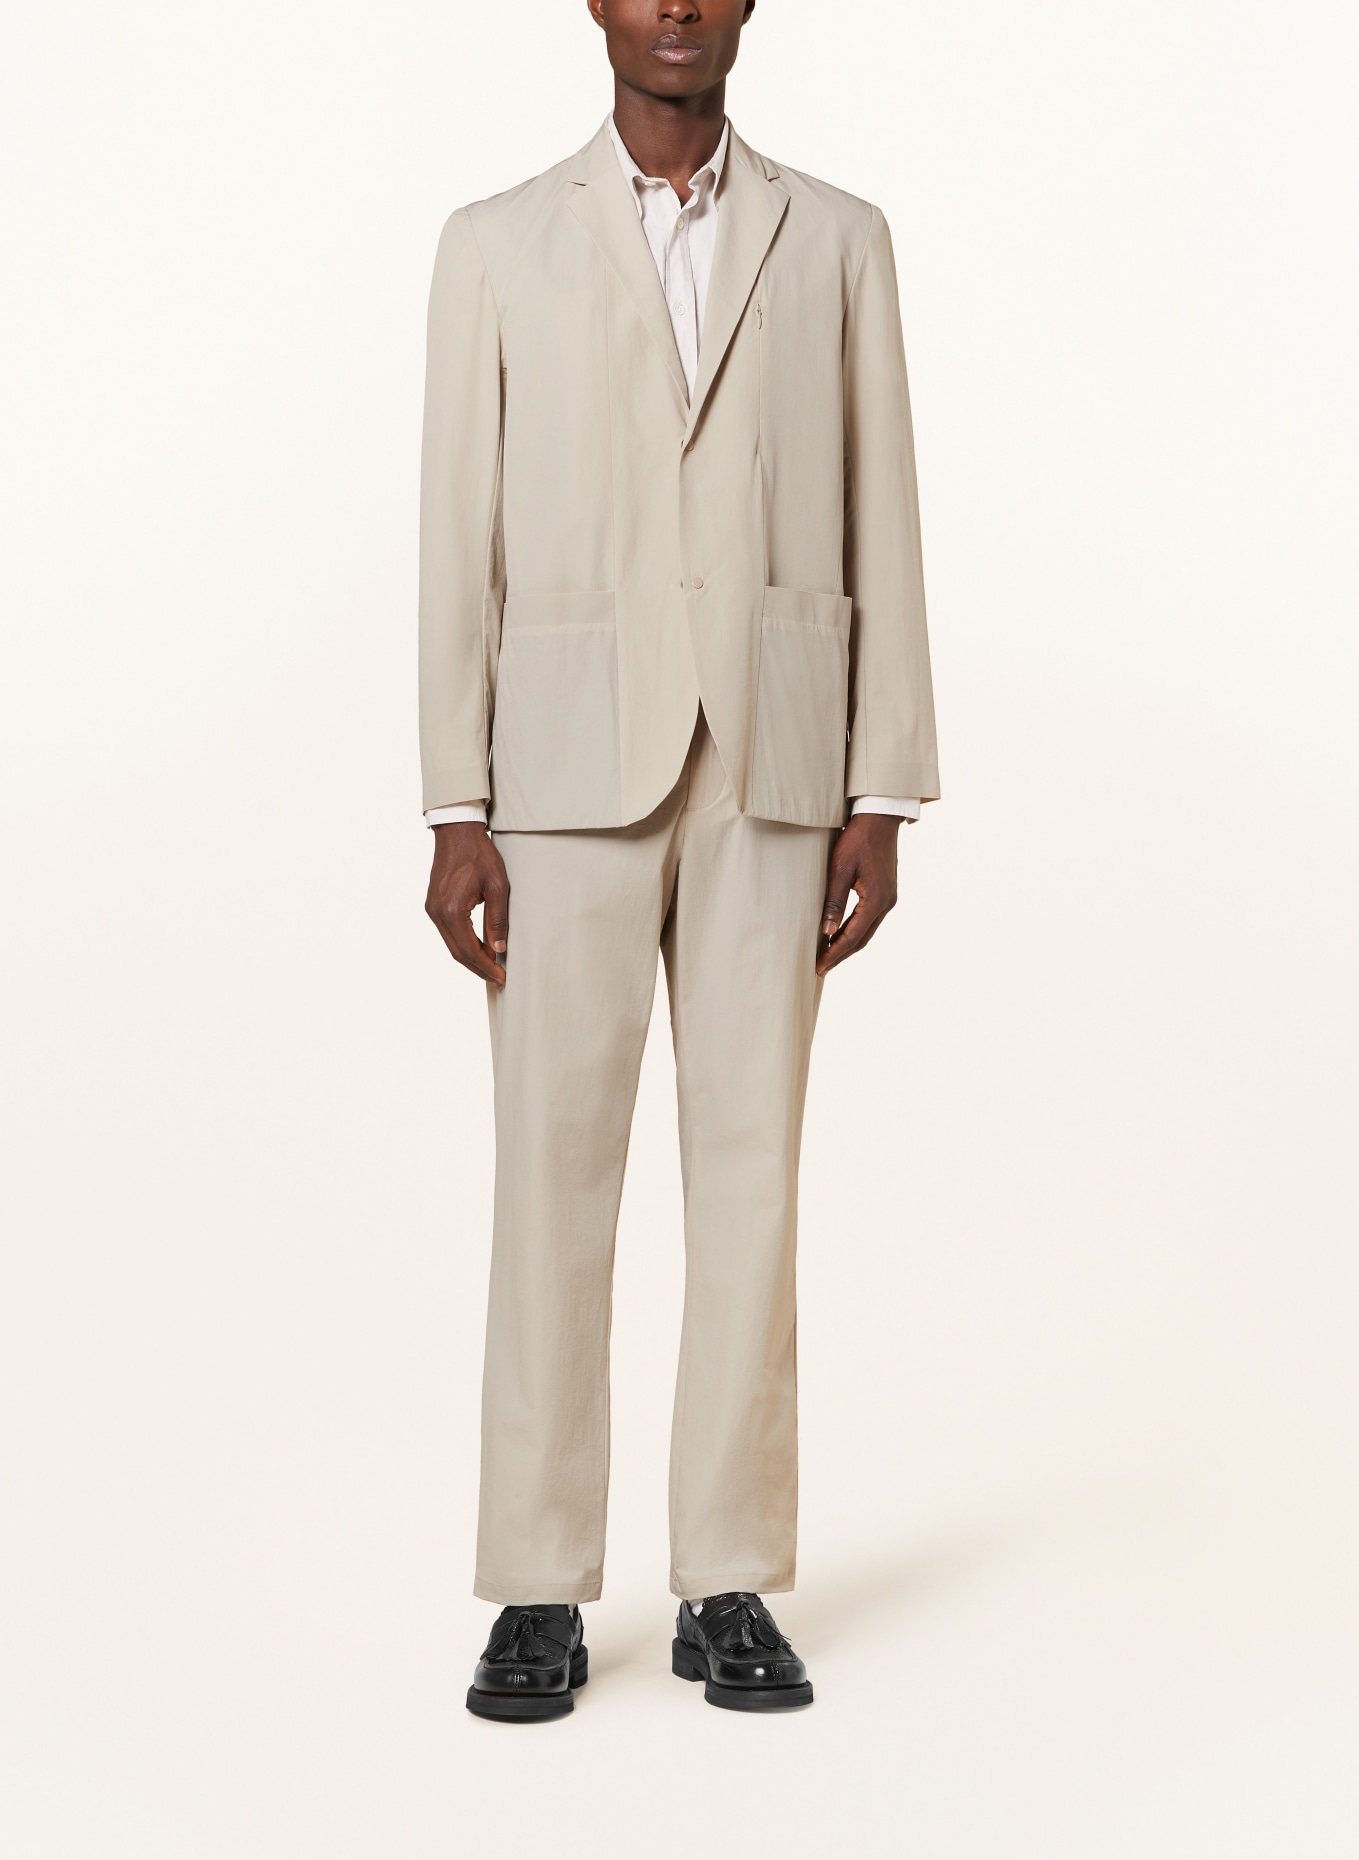 NORSE PROJECTS Suit jacket EMIL regular fit, Color: 0920 Light Khaki (Image 2)